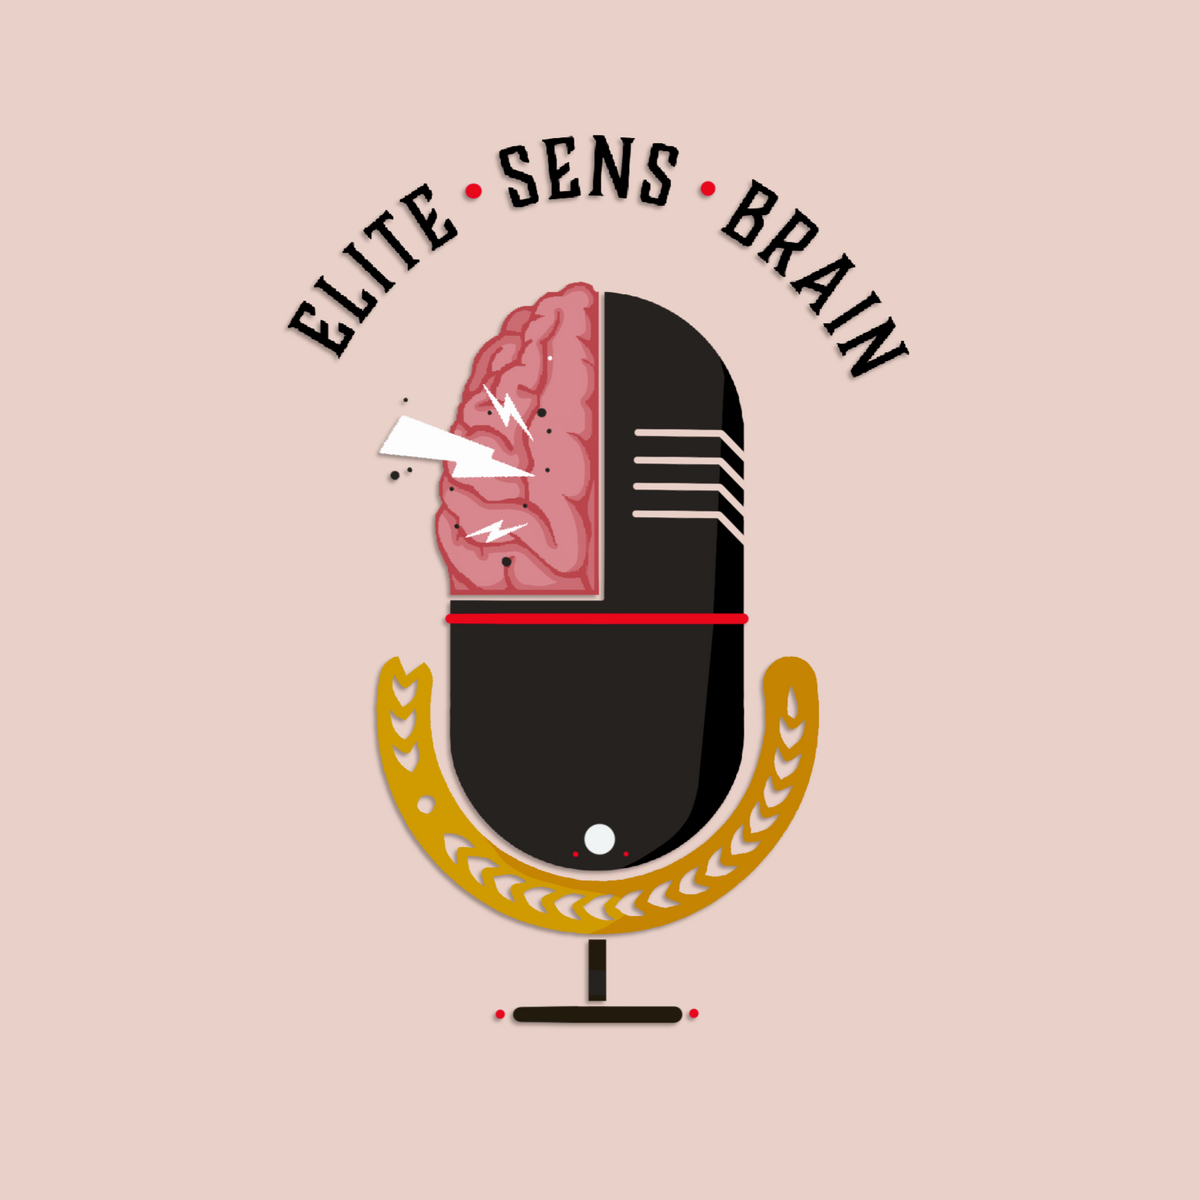 Elite Sens Brain, Episode 19: Go Sens Go